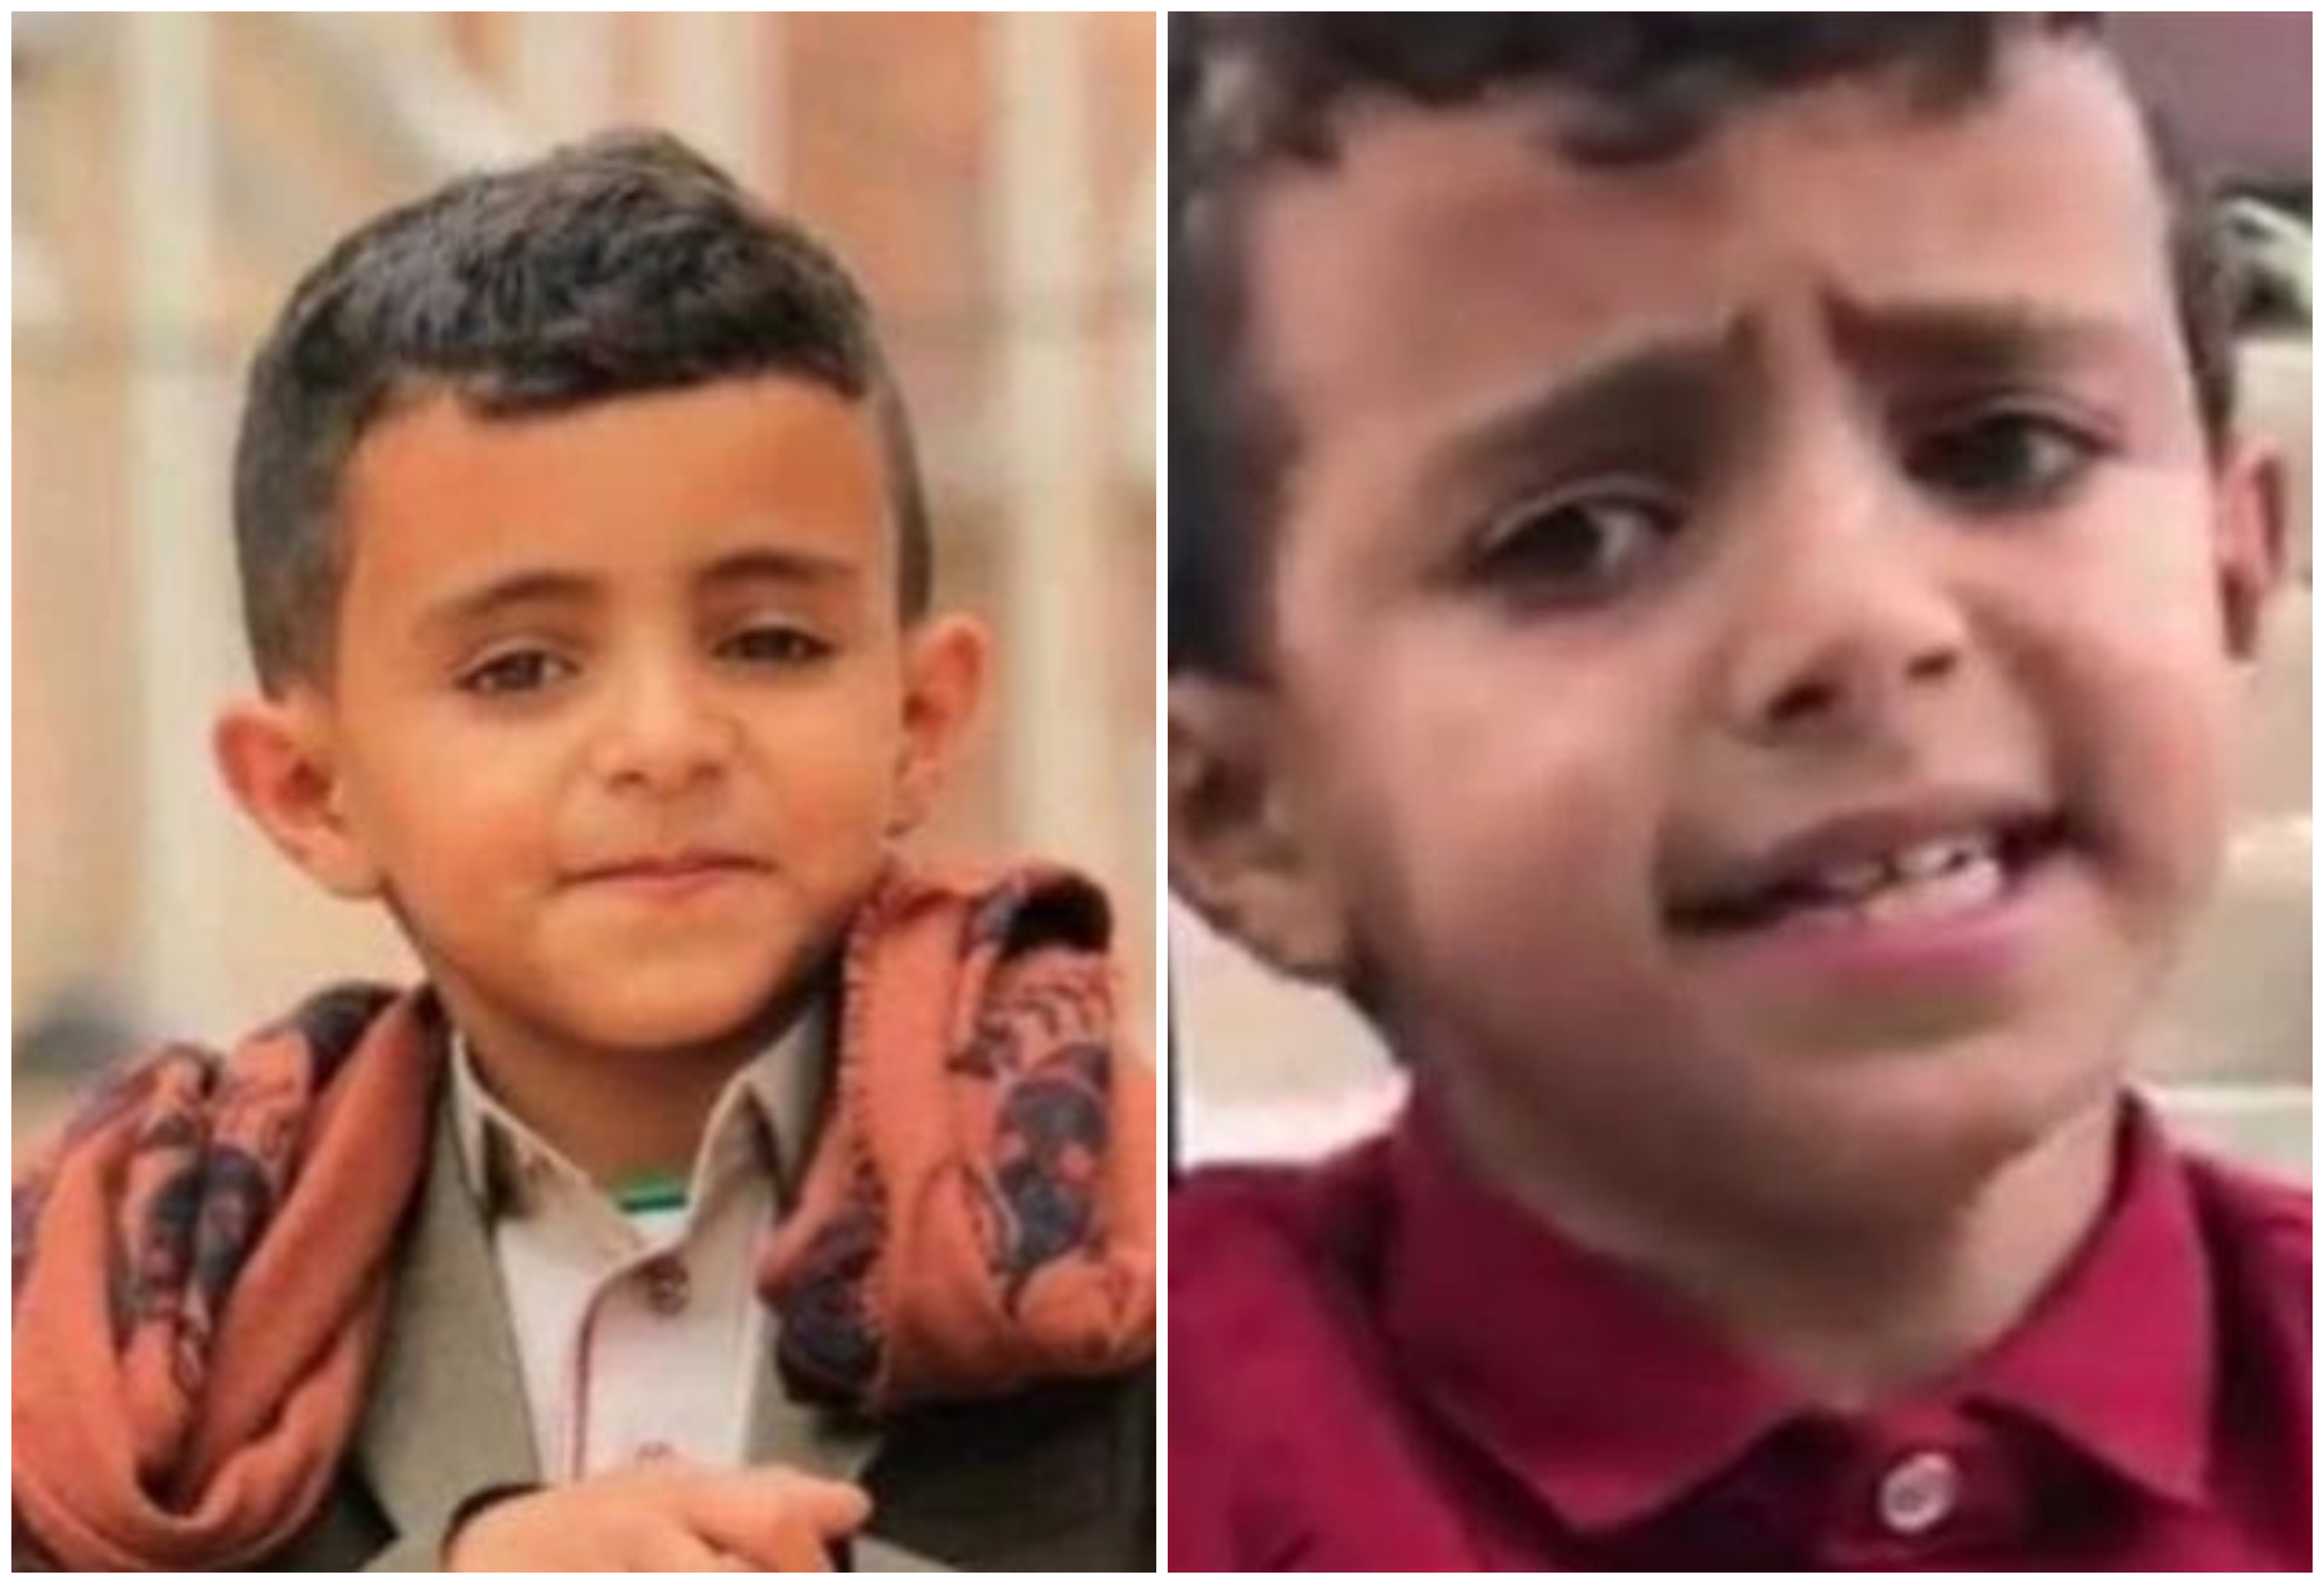 بالفيديو/ ملحن لبناني يتبنى الطفل اليمني &quot;عمرو&quot; بائع الماء فنيا ويدعوه الى لبنان